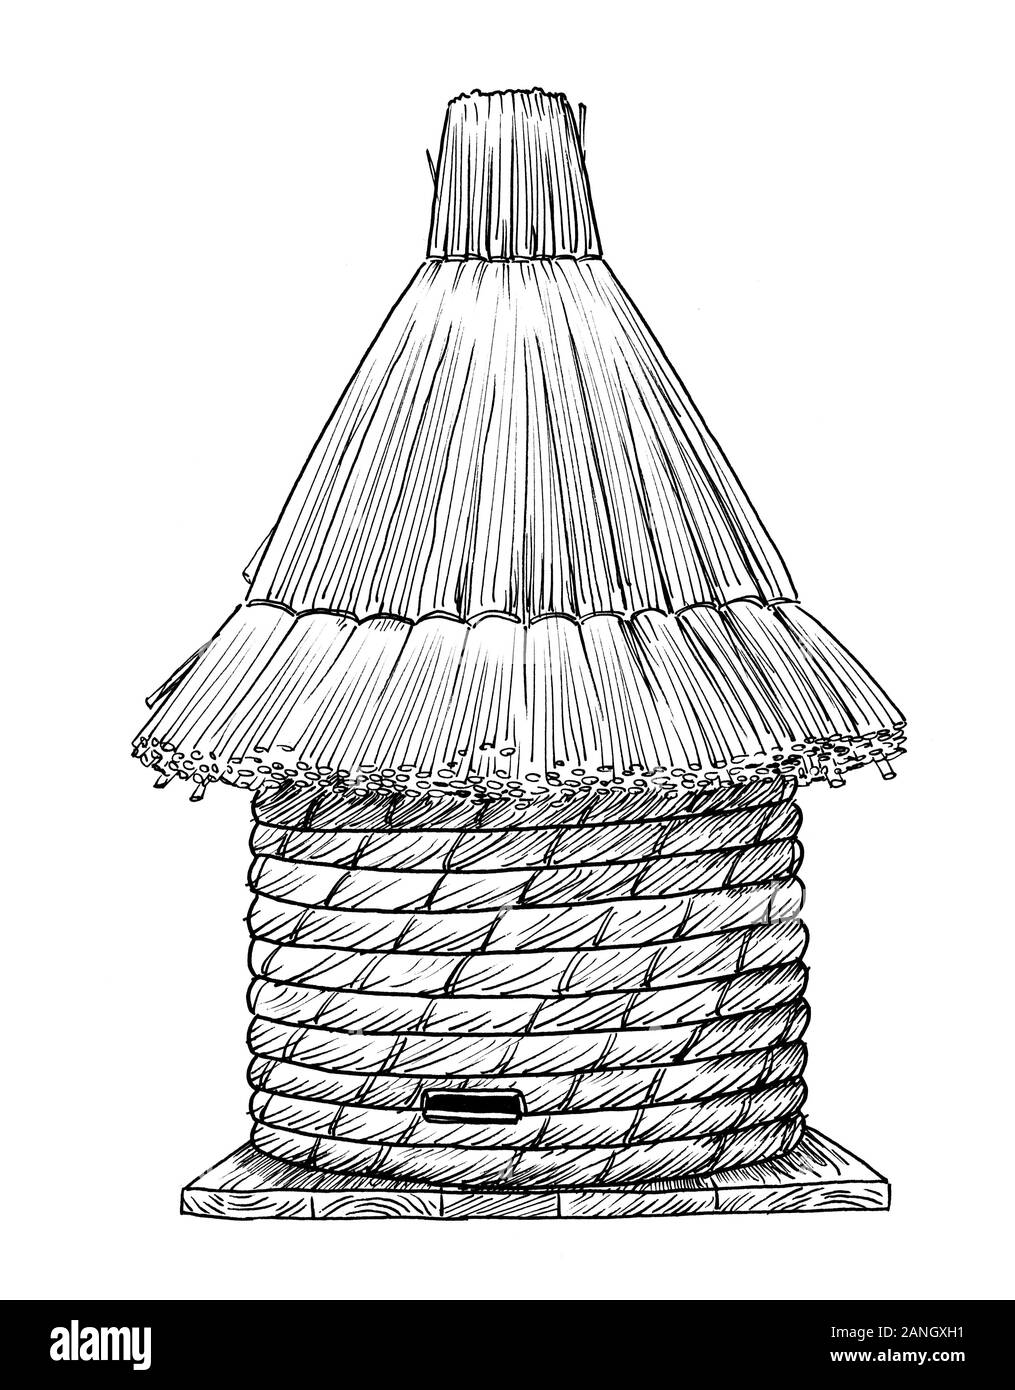 Zeichnung der alten Art Bienenstock aus streuen. Skizze des eekeeping Equipement, schwarze und weiße Abbildung Stockfoto